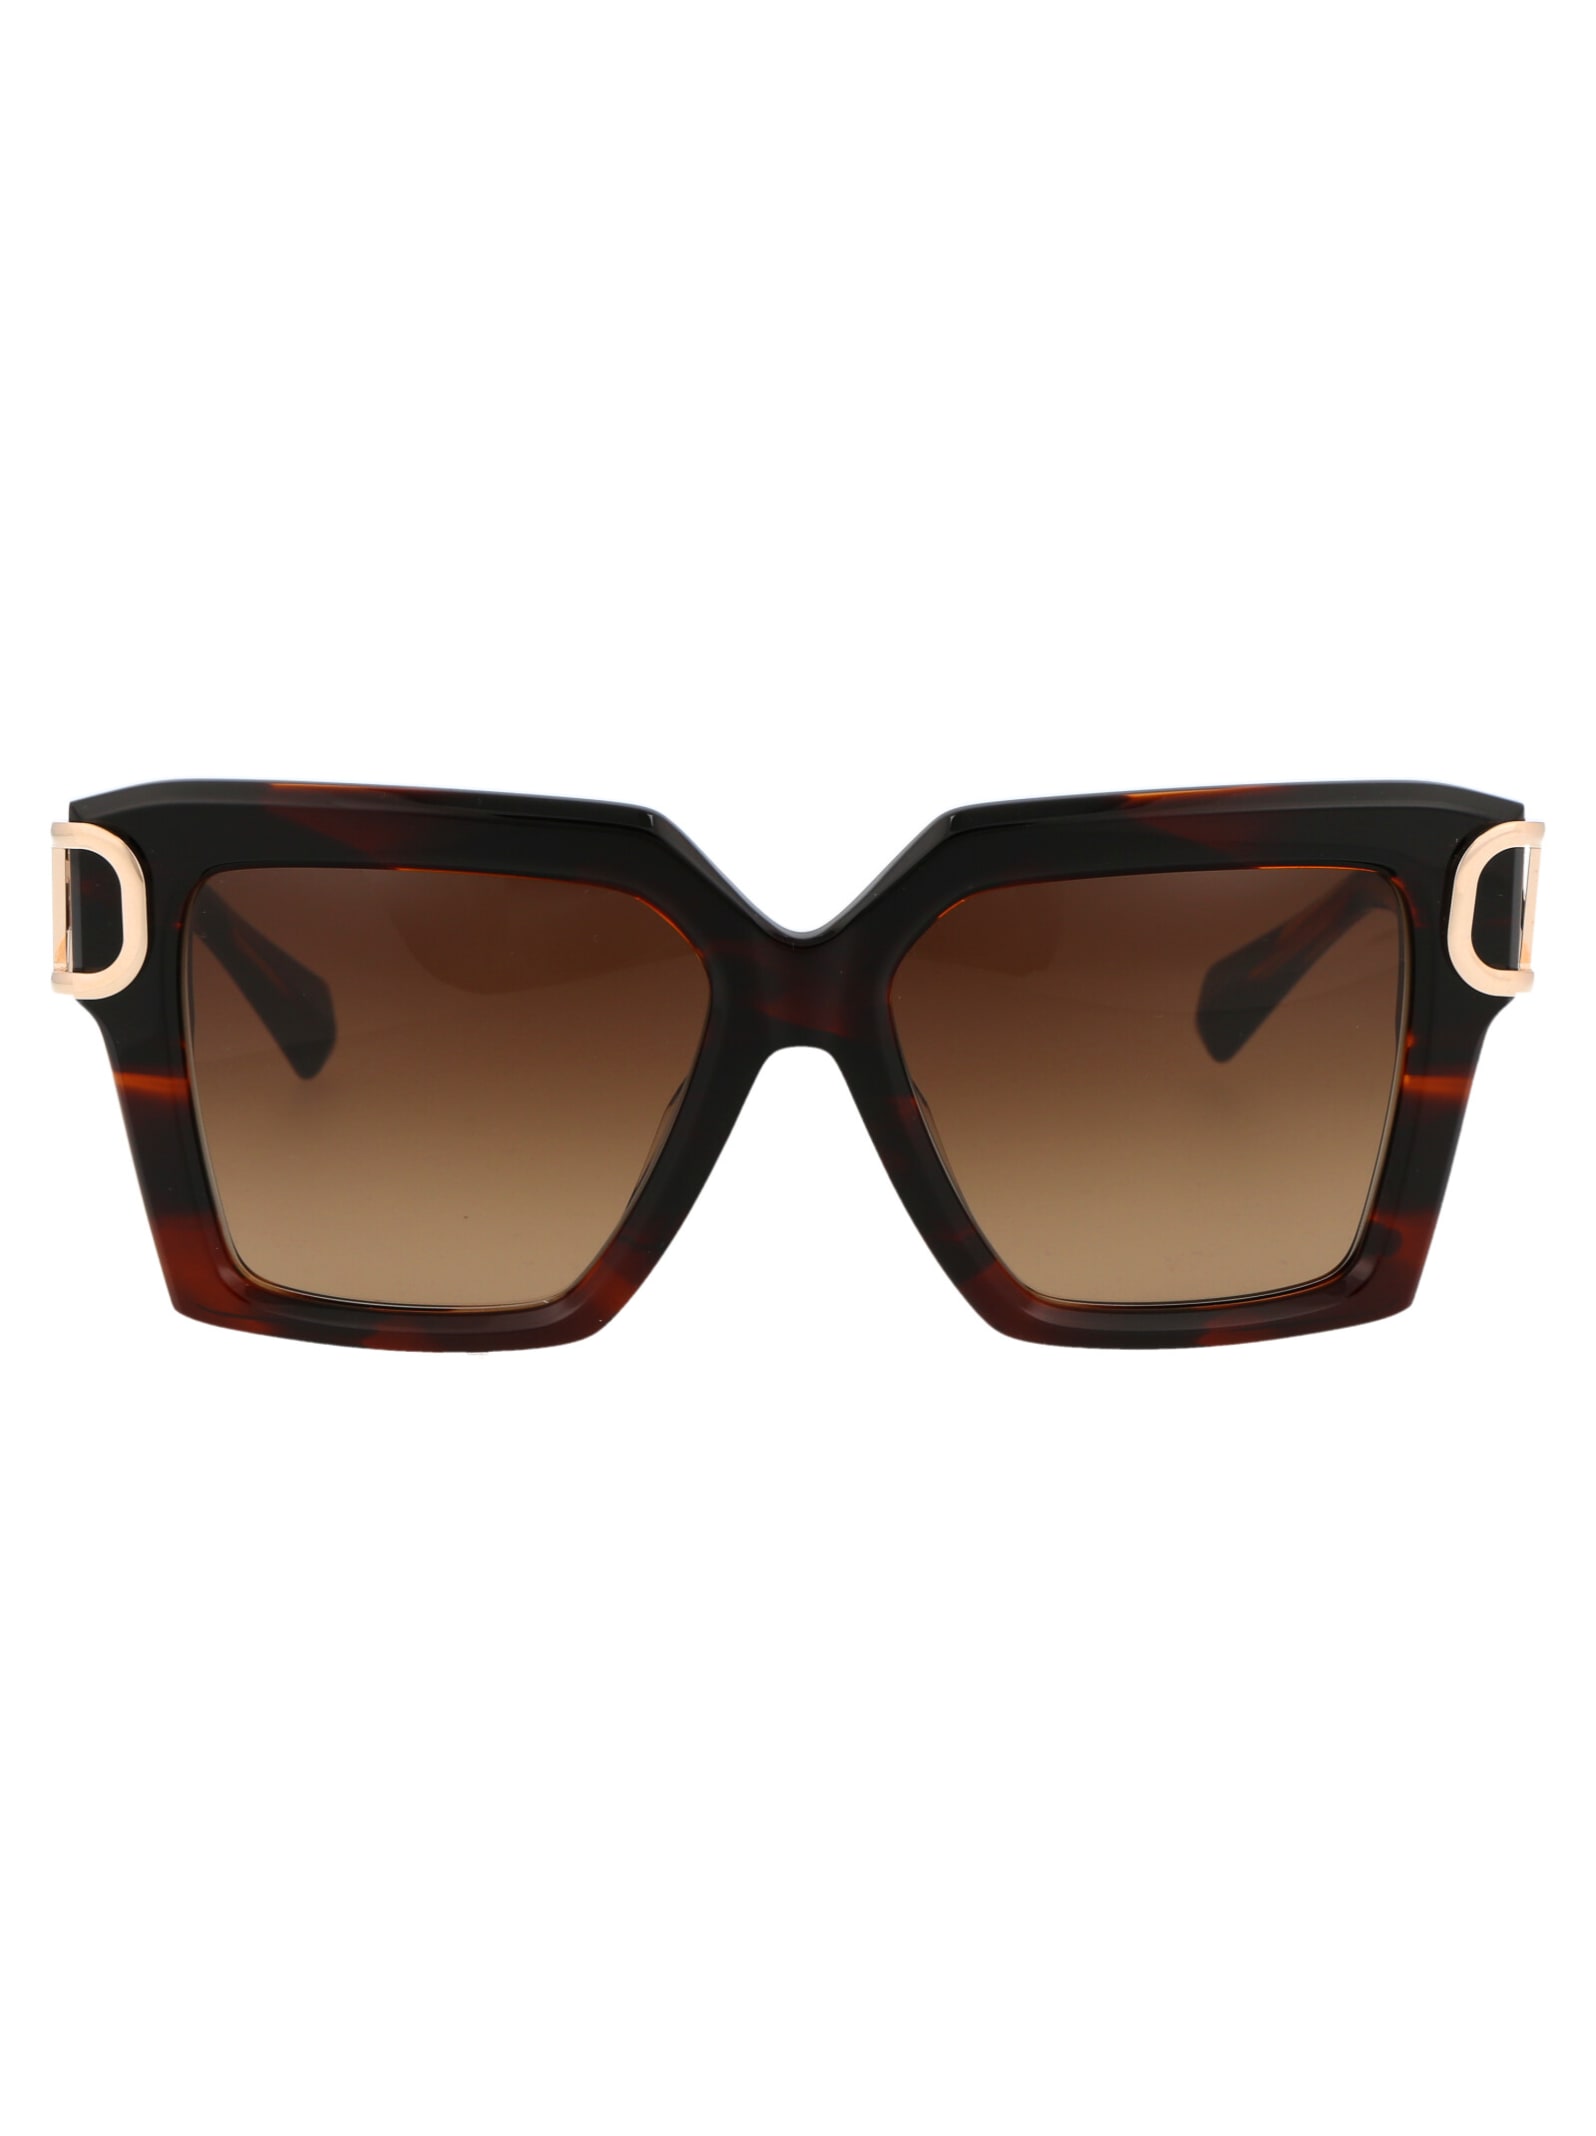 Valentino V - Uno Sunglasses In Brn - Gld